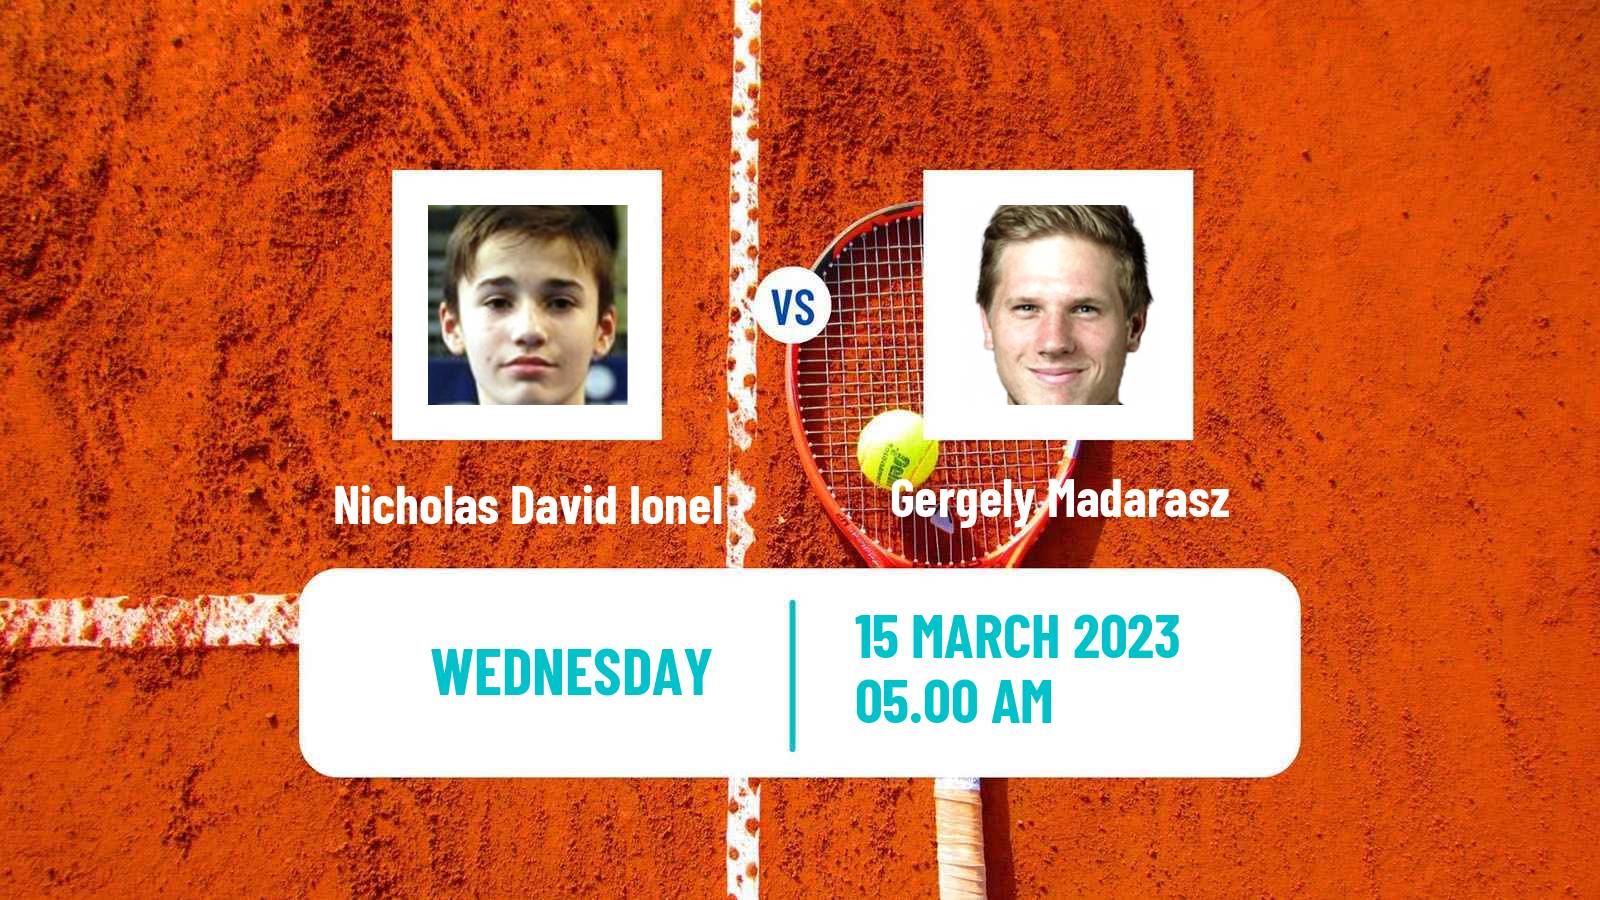 Tennis ATP Challenger Nicholas David Ionel - Gergely Madarasz